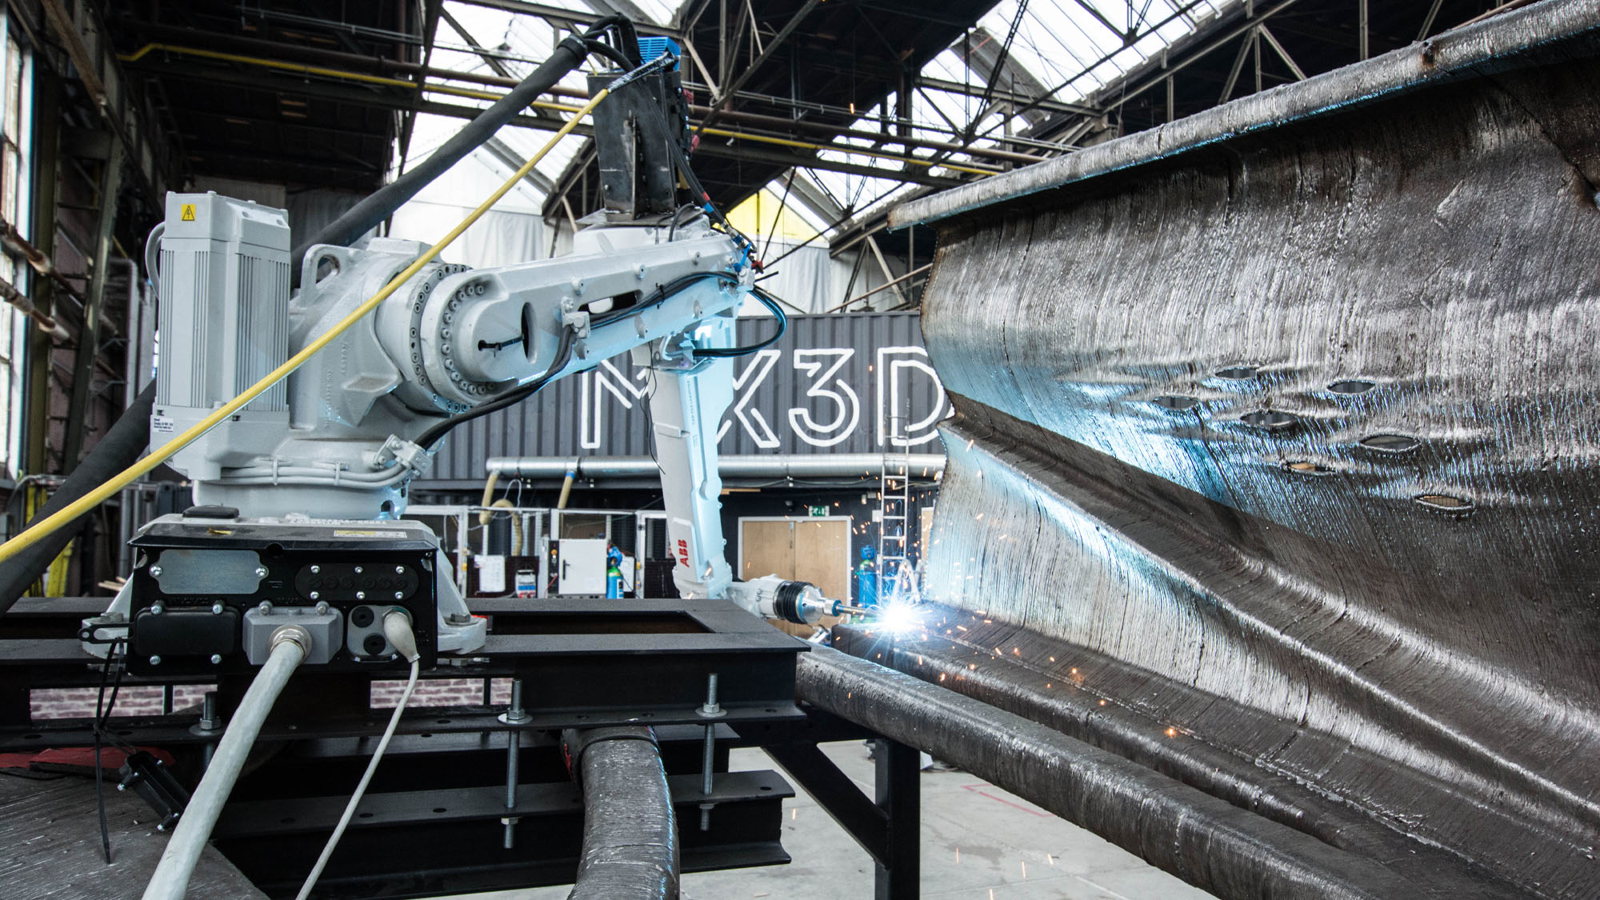 Printing process of the 3D bridge. Credit: Olivier de Gruijter